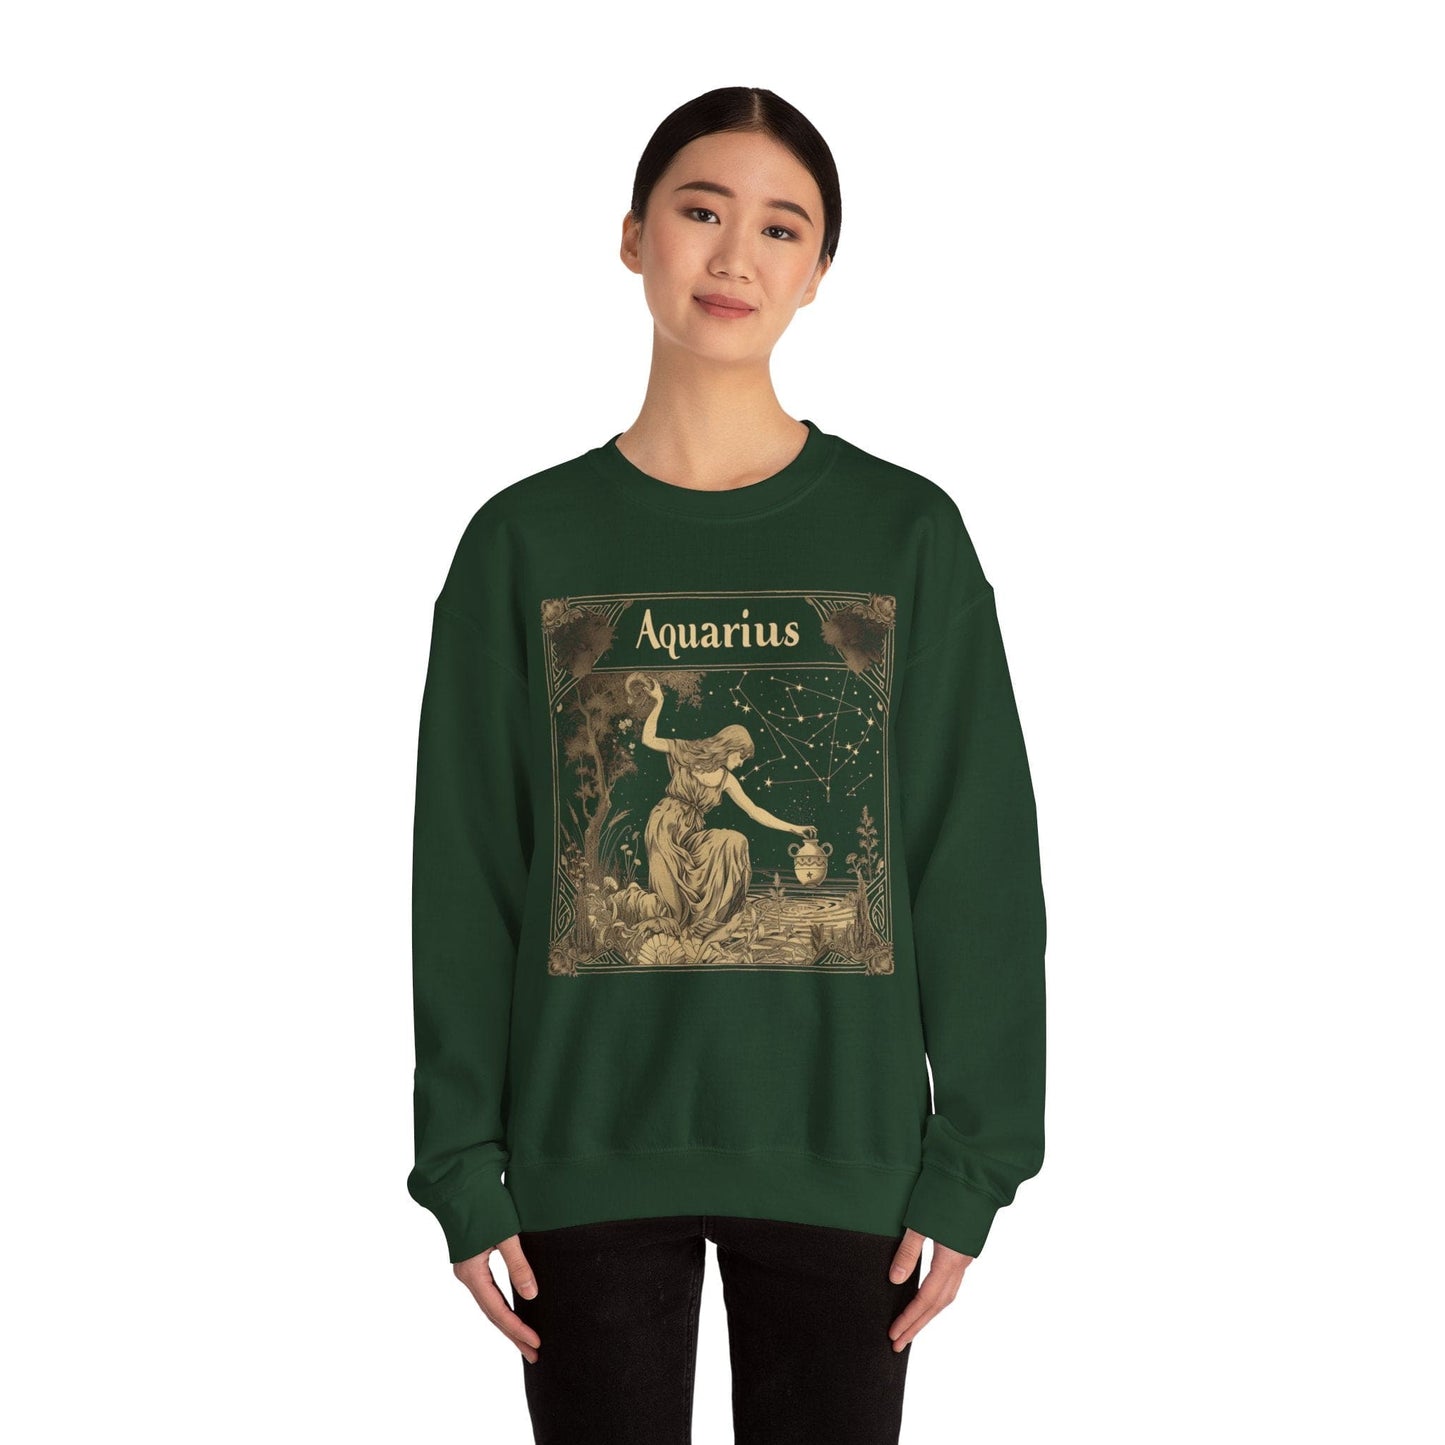 Sweatshirt Aquarius Golden Age Sweatshirt: Cosmic Elegance Meets Modern Comfort